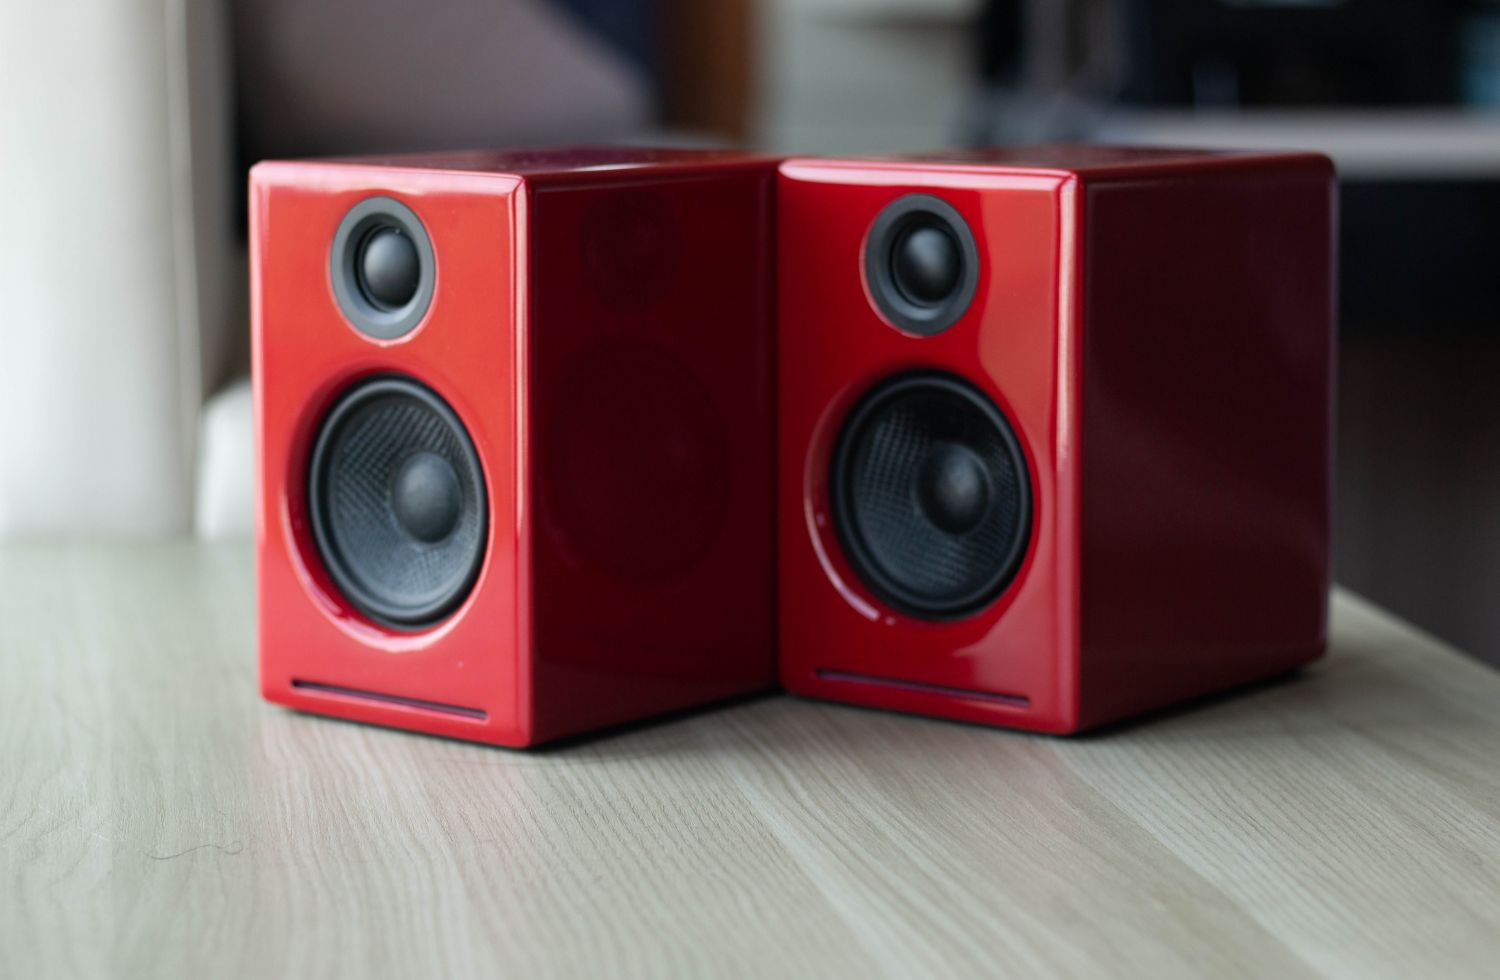 Geek Review: Audioengine A2+ Wireless Stereo Speakers | Geek Culture